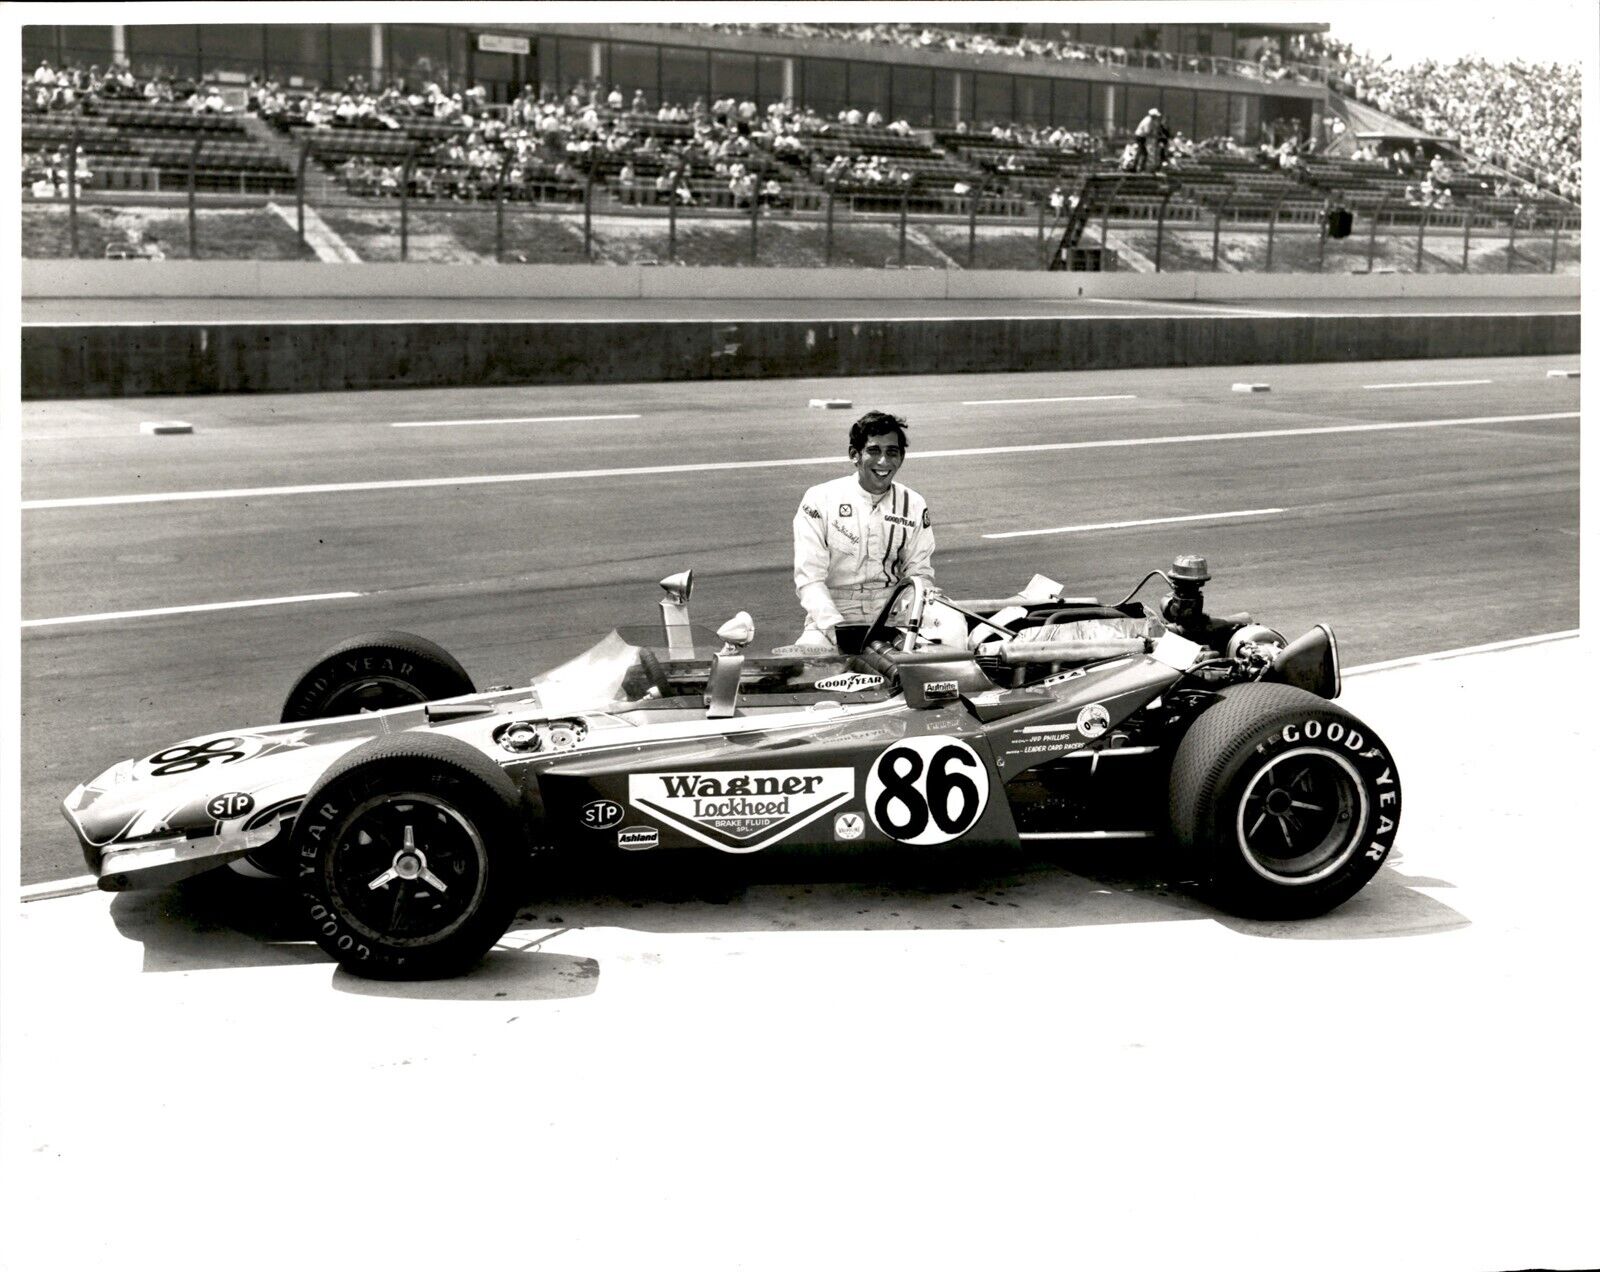 LD339 1970 Orig Darryl Norenberg Photo STEVE KRISILOFF #86 CALIFORNIA 500 RACE